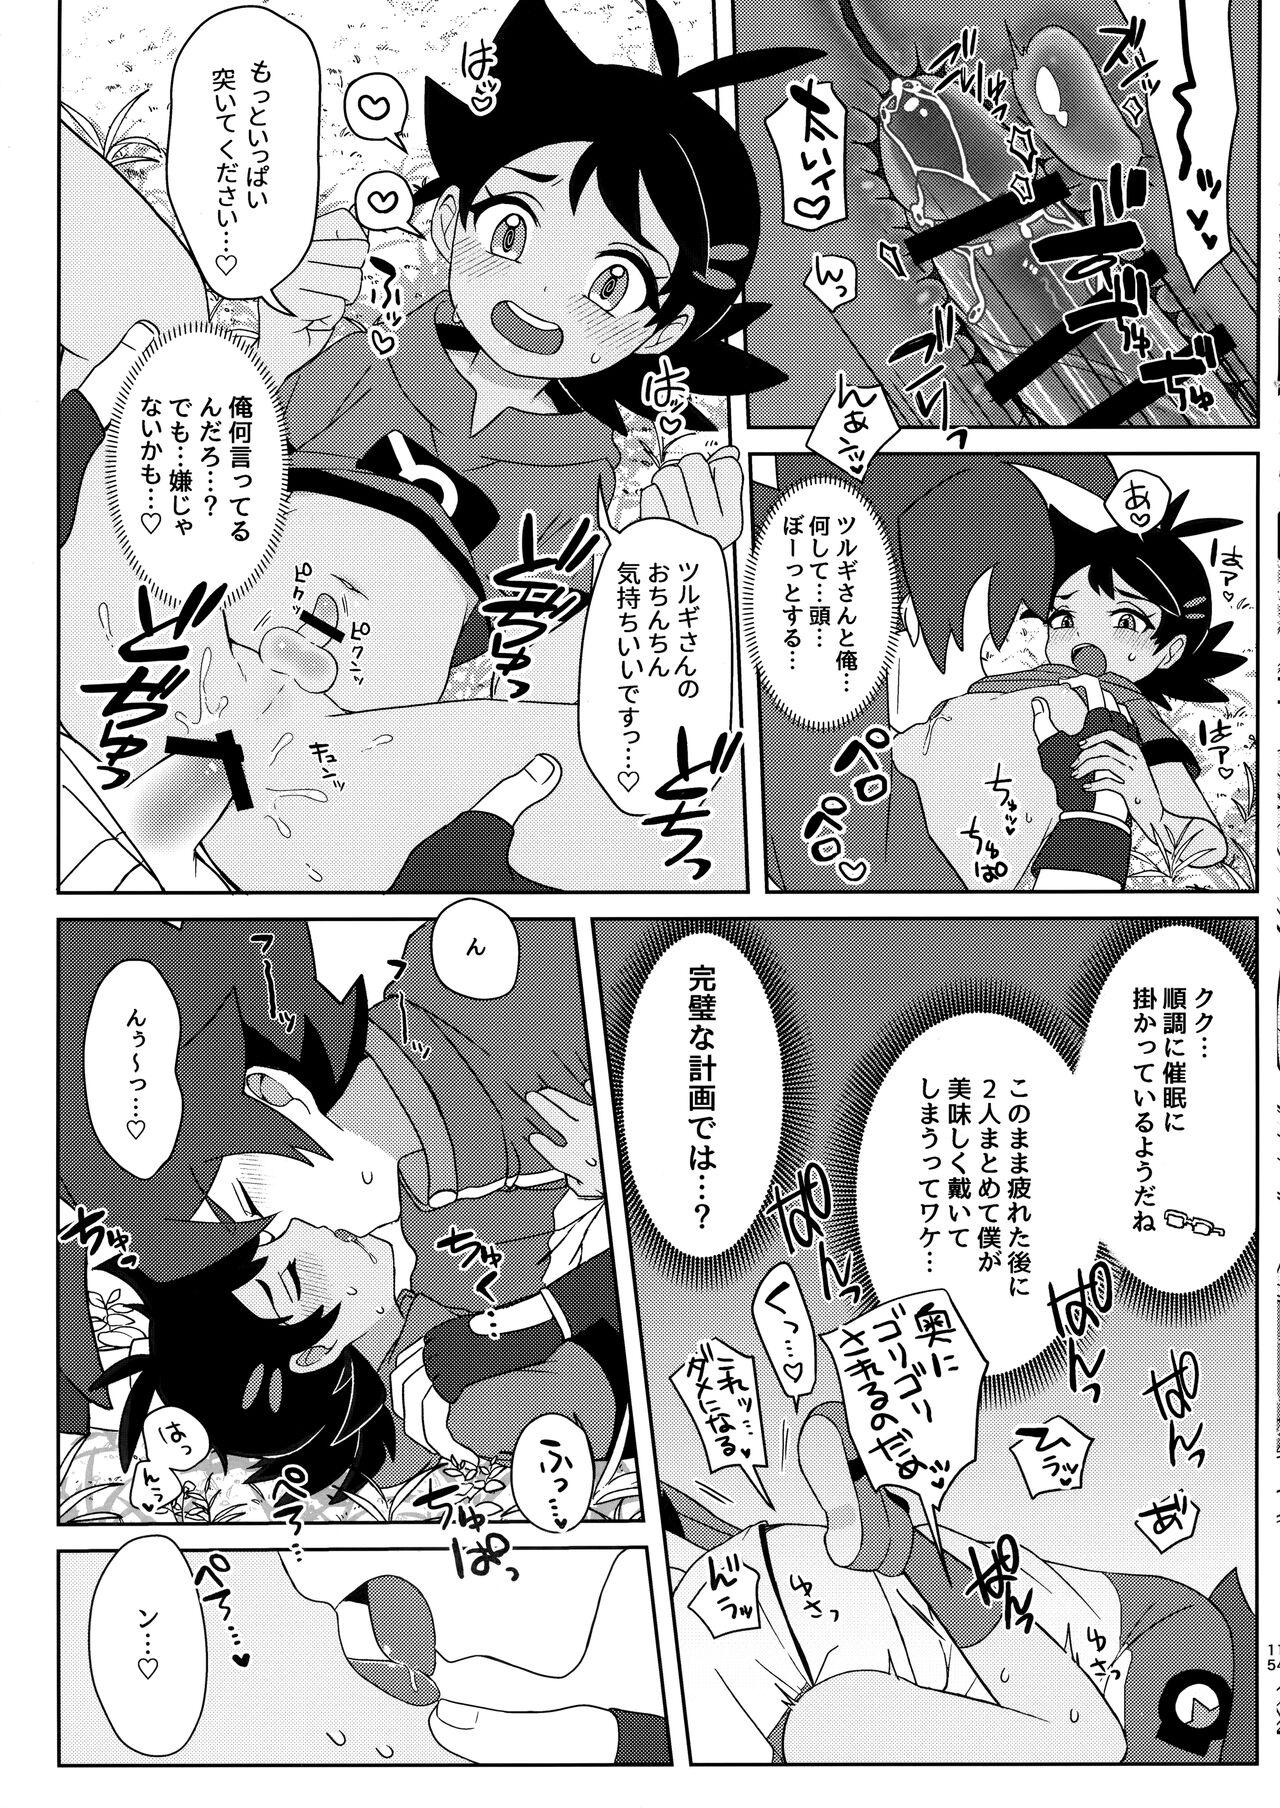 (ShotaFes12) [Chibaken, Shounen Scale, MILKBEE (Chiba, nico, 085)] Tsurugi-san to Goh-kun ga Kimeseku suru Goudoushi (Pokémon Journeys) 13